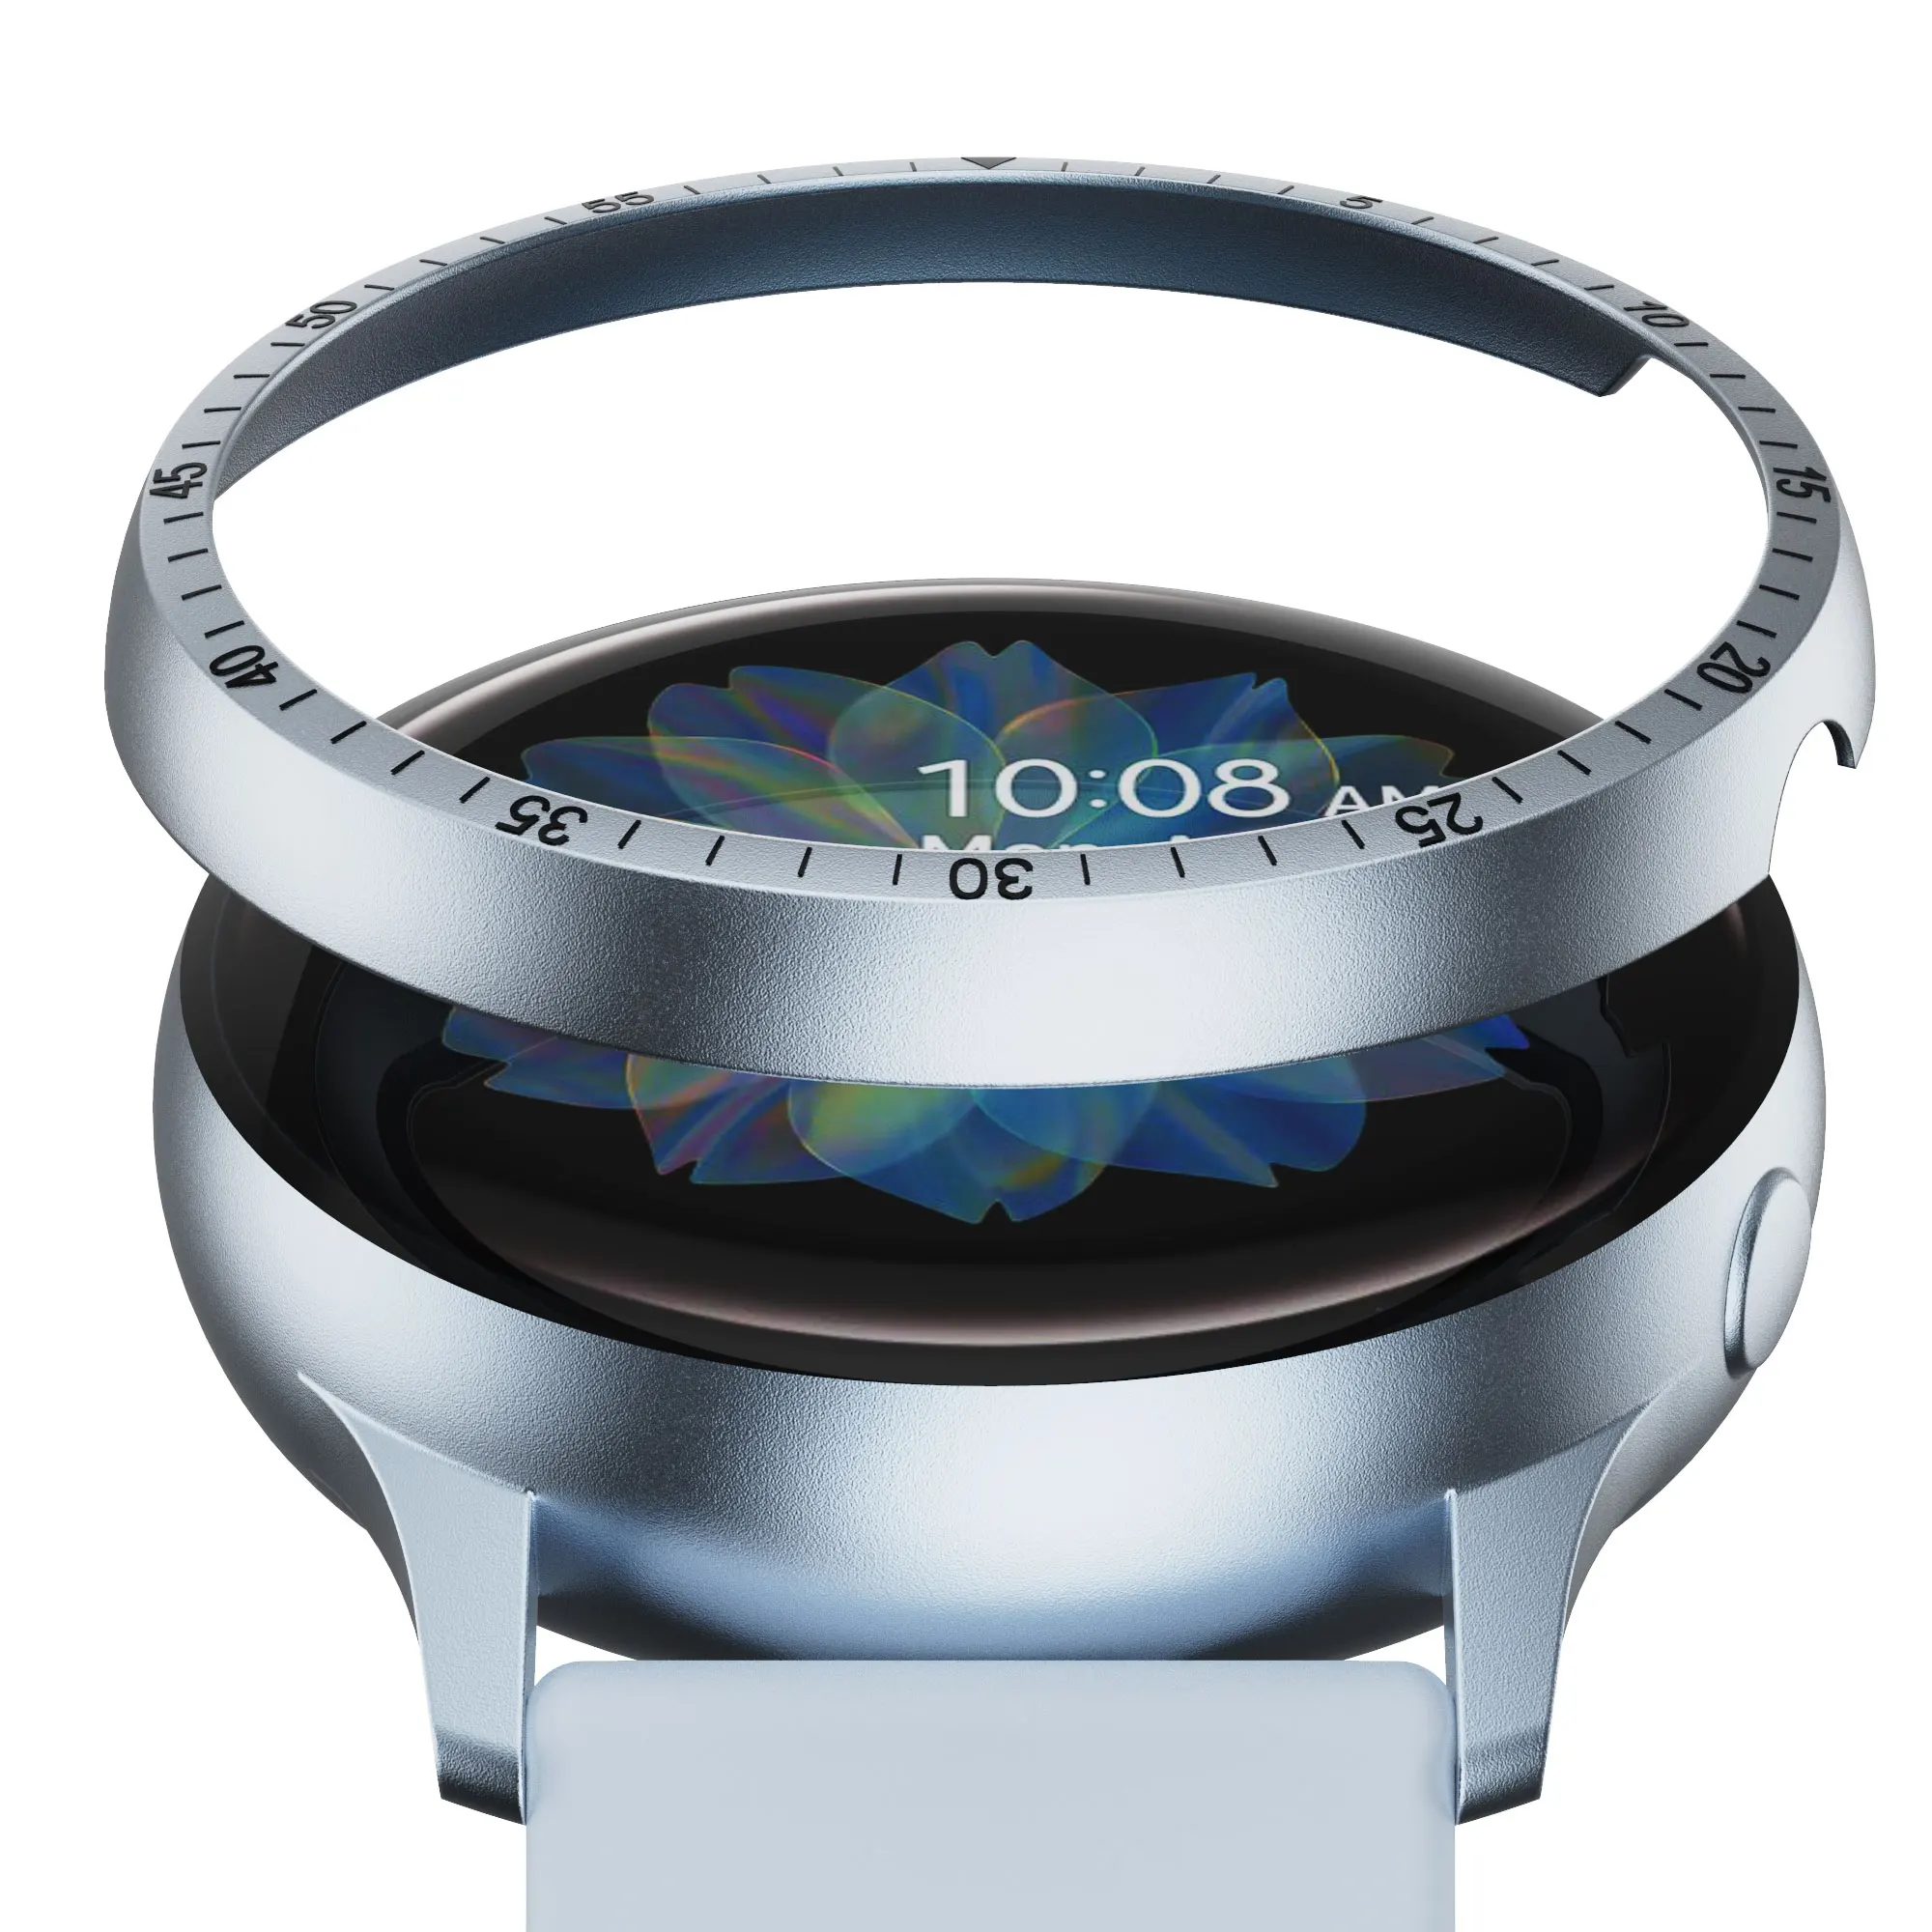 Безель со шкалой для Samsung Galaxy Watch Active 2 40 мм/44 мм Защитная крышка спортивного металлического бампера Аксессуары